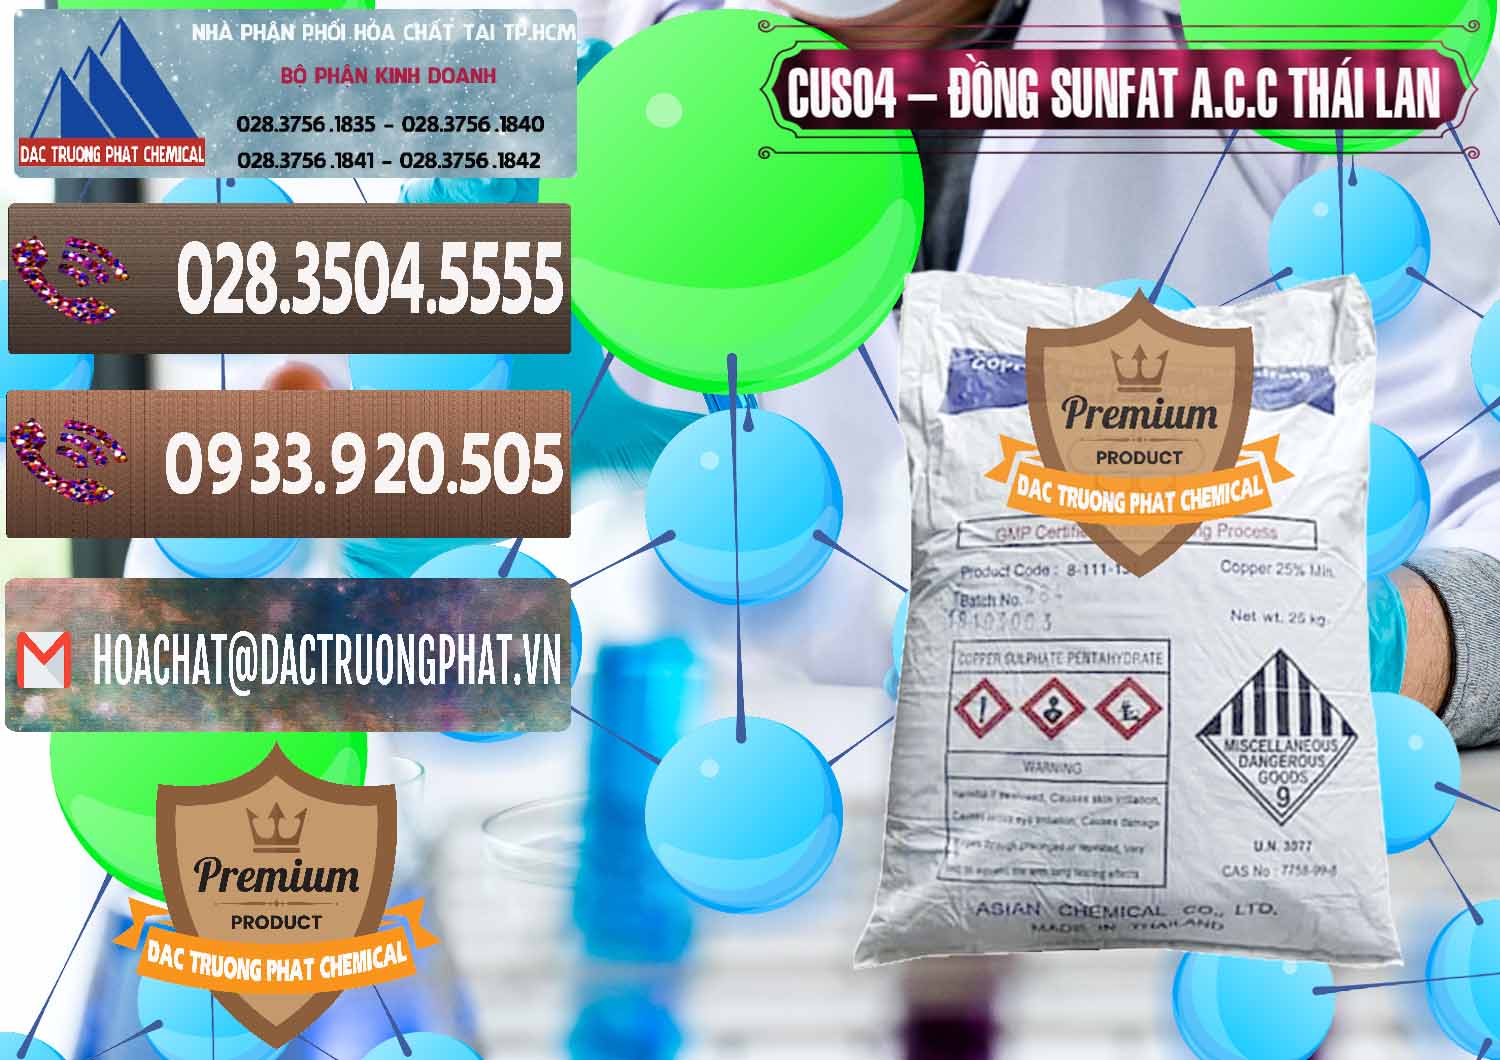 Công ty chuyên cung cấp và bán CuSO4 – Đồng Sunfat A.C.C Thái Lan - 0249 - Công ty chuyên nhập khẩu ( cung cấp ) hóa chất tại TP.HCM - hoachatviet.net